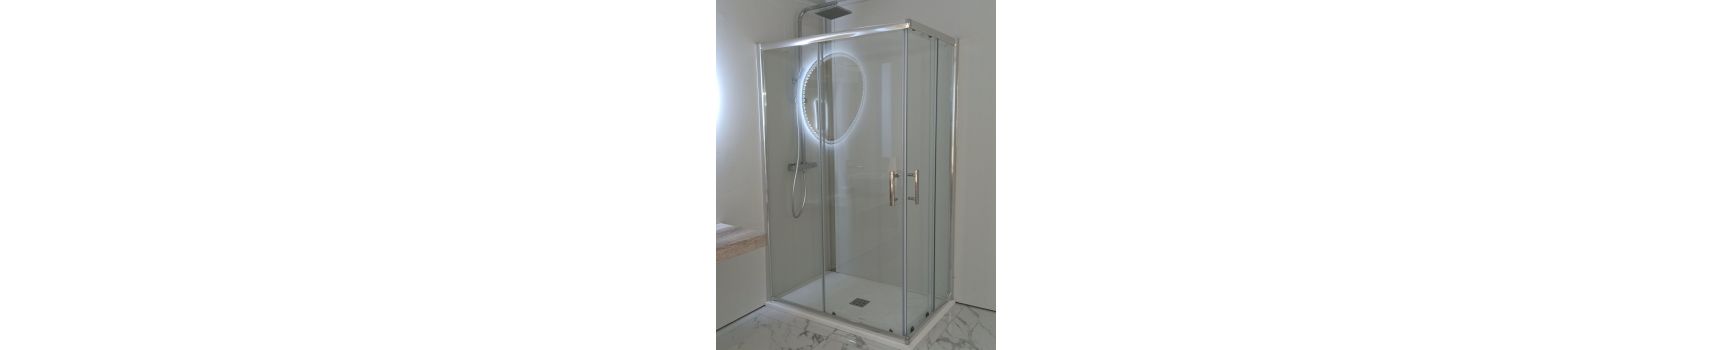 Box doccia, Piatti doccia e rubinetteria | Boleco